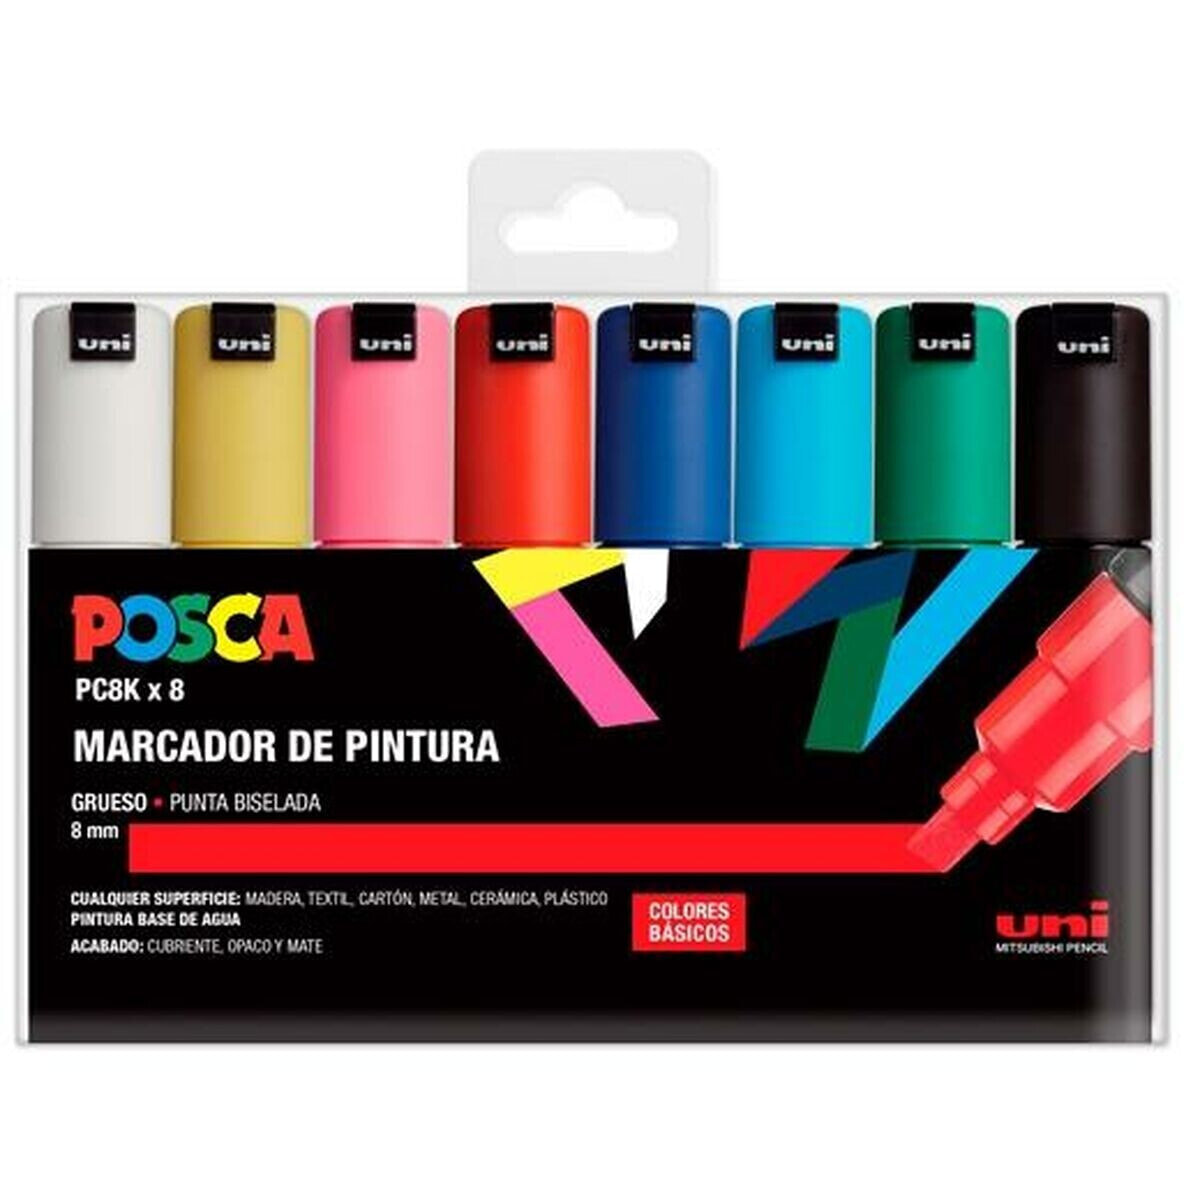 Set of Felt Tip Pens POSCA PC-8K Multicolour 8 mm 8 Pieces